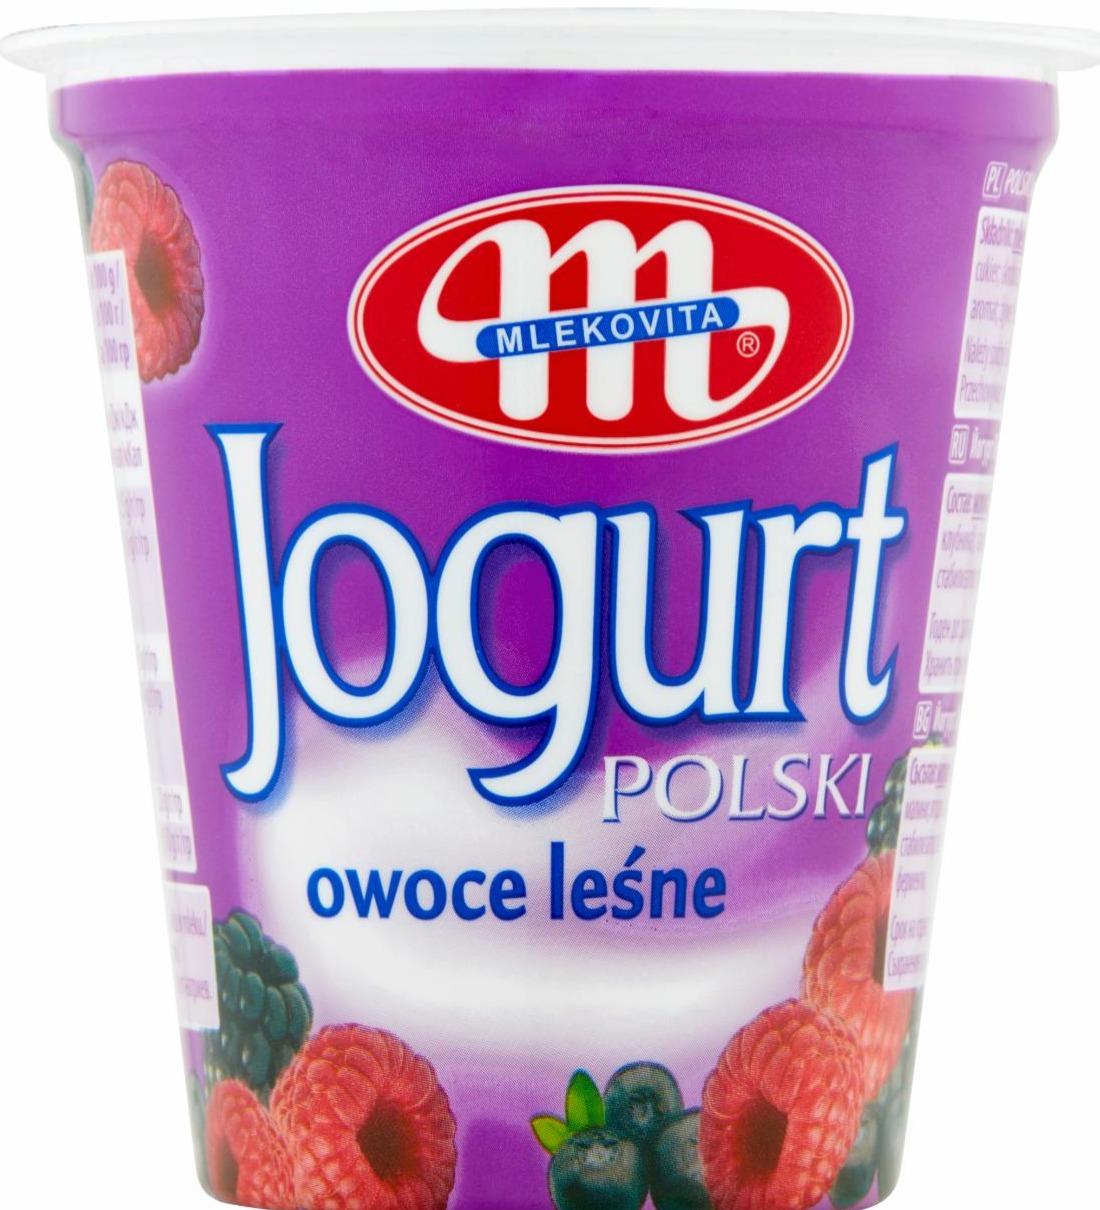 Zdjęcia - Mlekovita Jogurt Polski owoce leśne 150 g